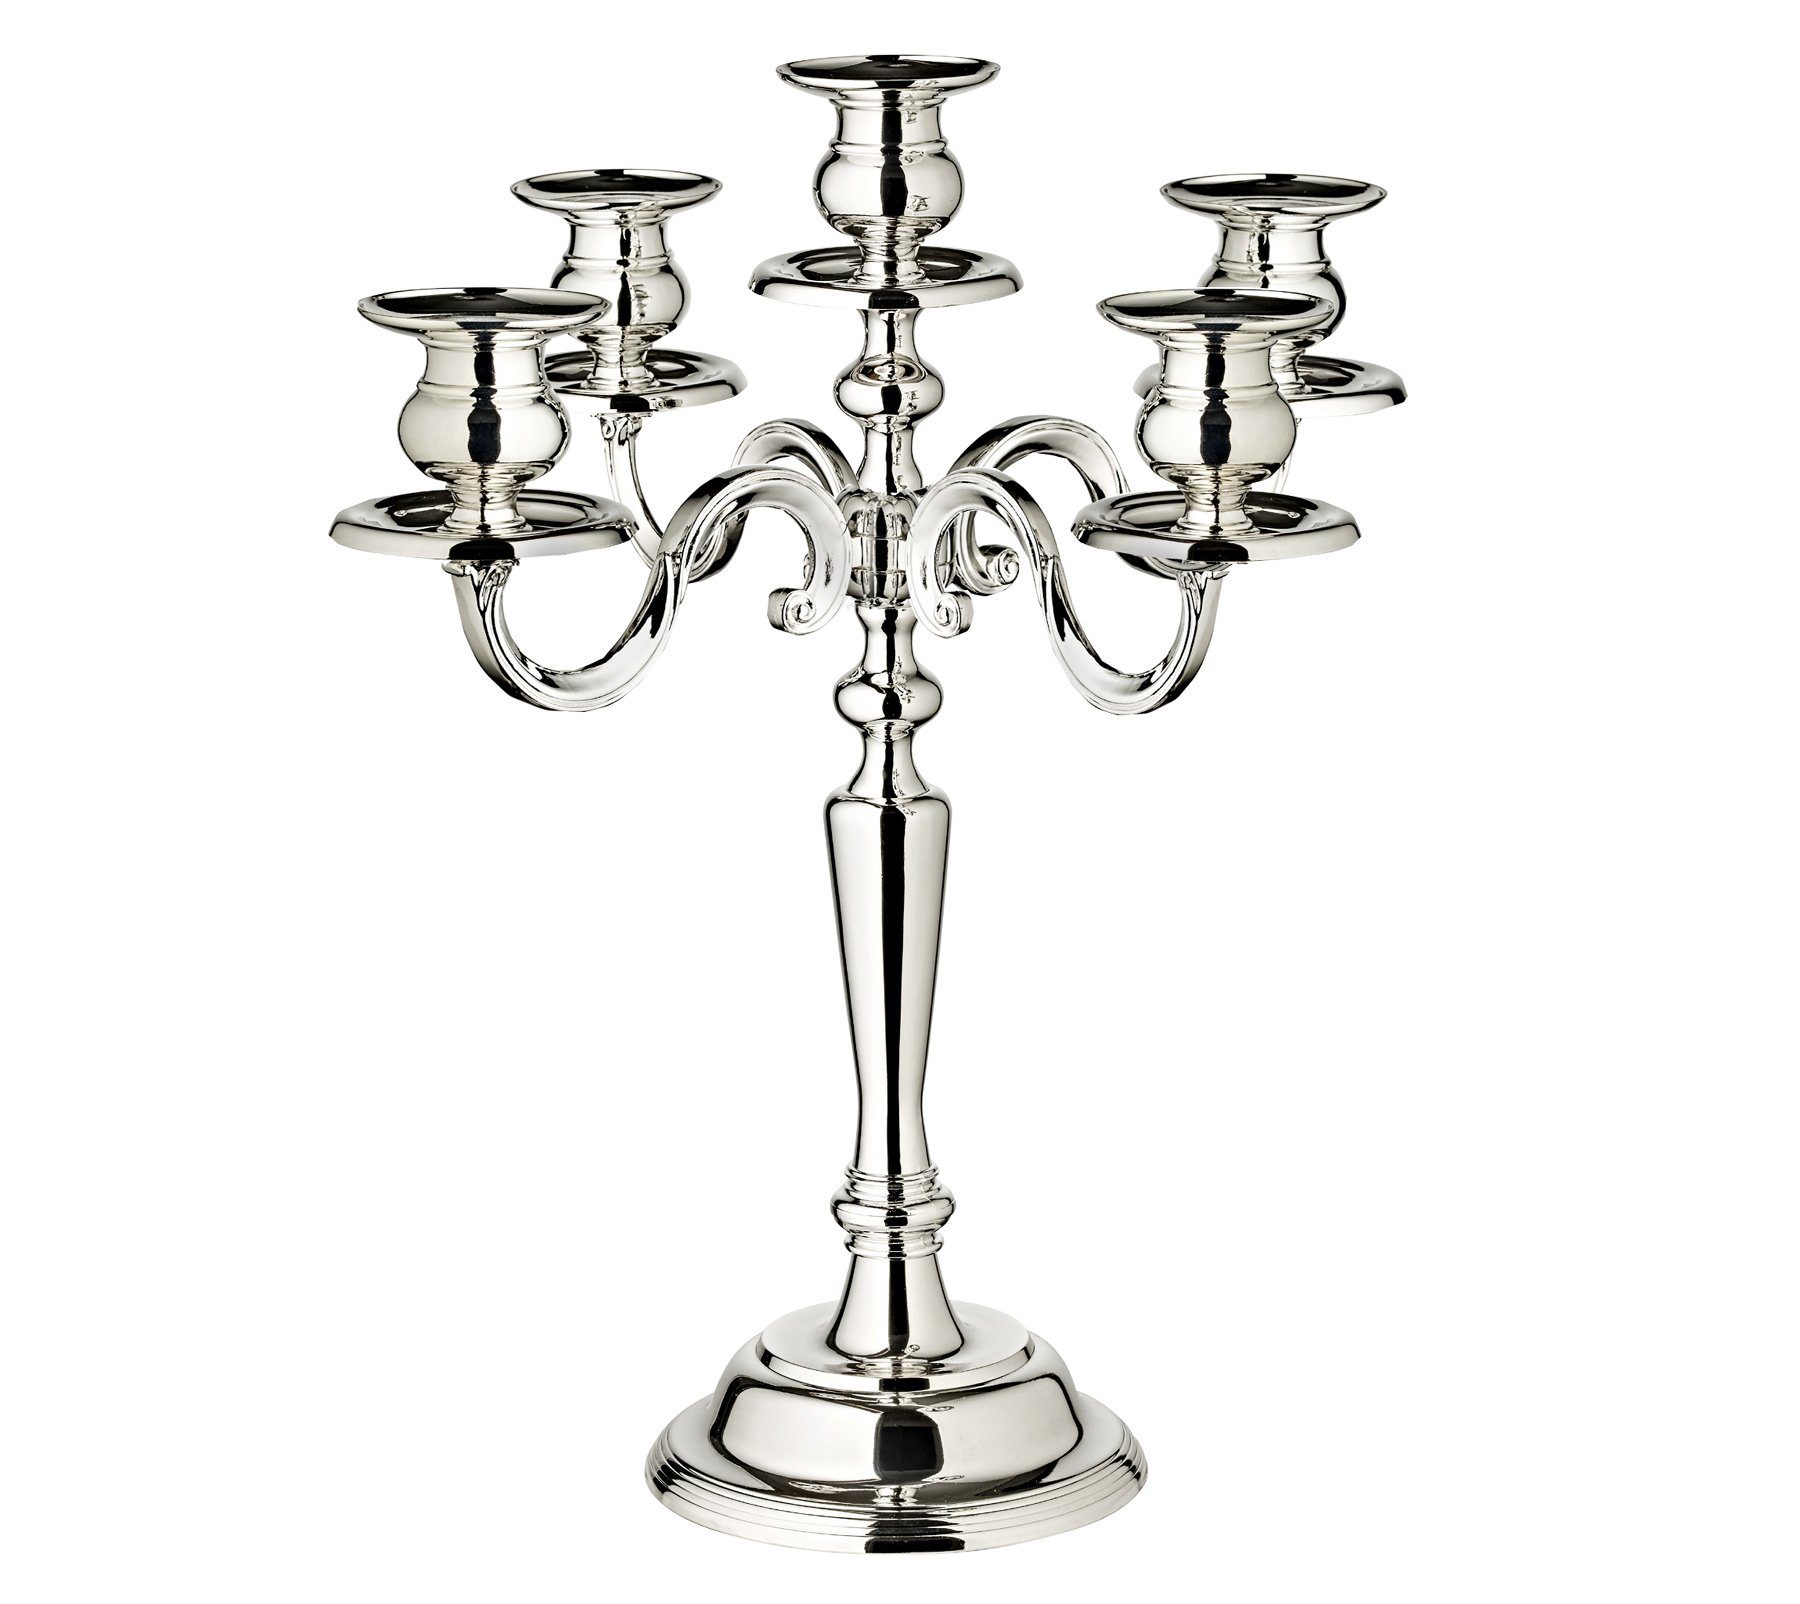 EDZARD Kerzenleuchter Regina, Kerzenständer mit Silber-Optik, Kerzenhalter 5-Flammig für Stabkerzen, versilbert und anlaufgeschützt, Höhe 37 cm